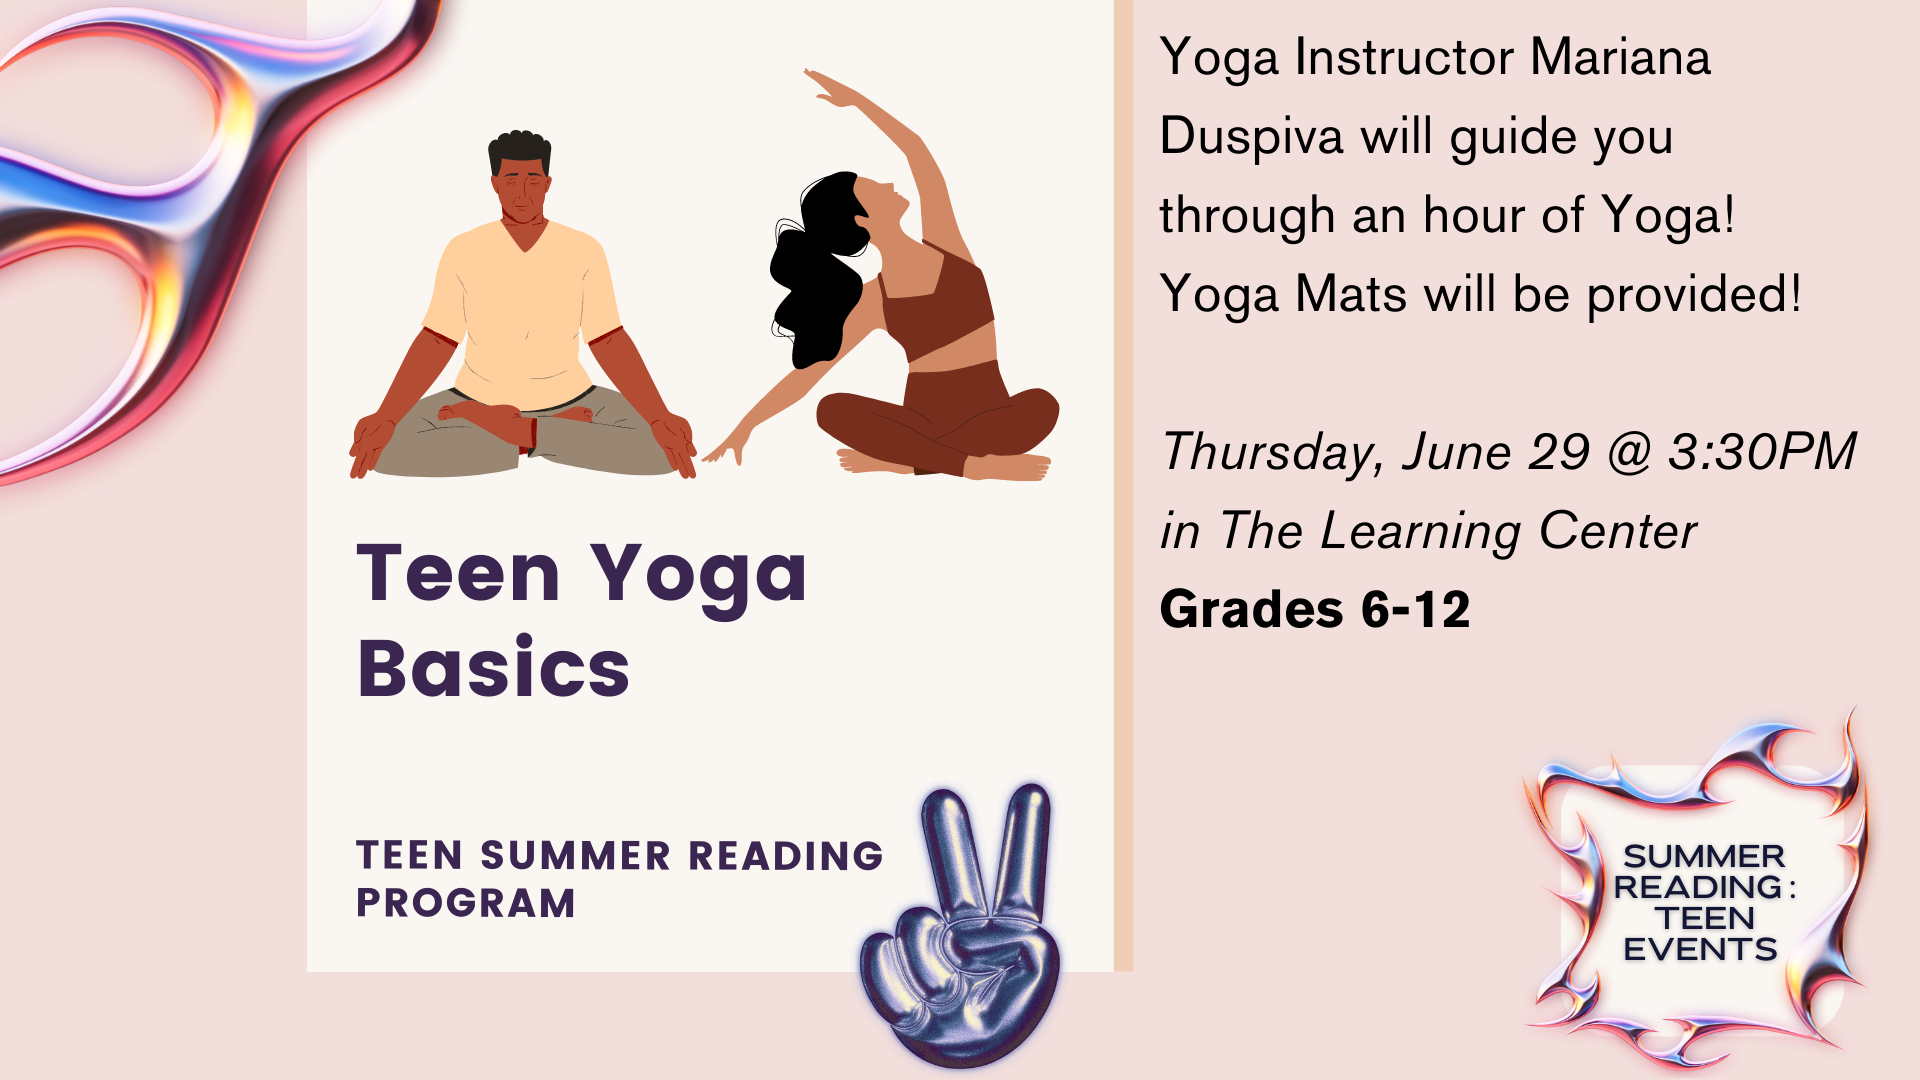 Teen Summer Reading Program: Yoga Basics June 29 3:30 PM    